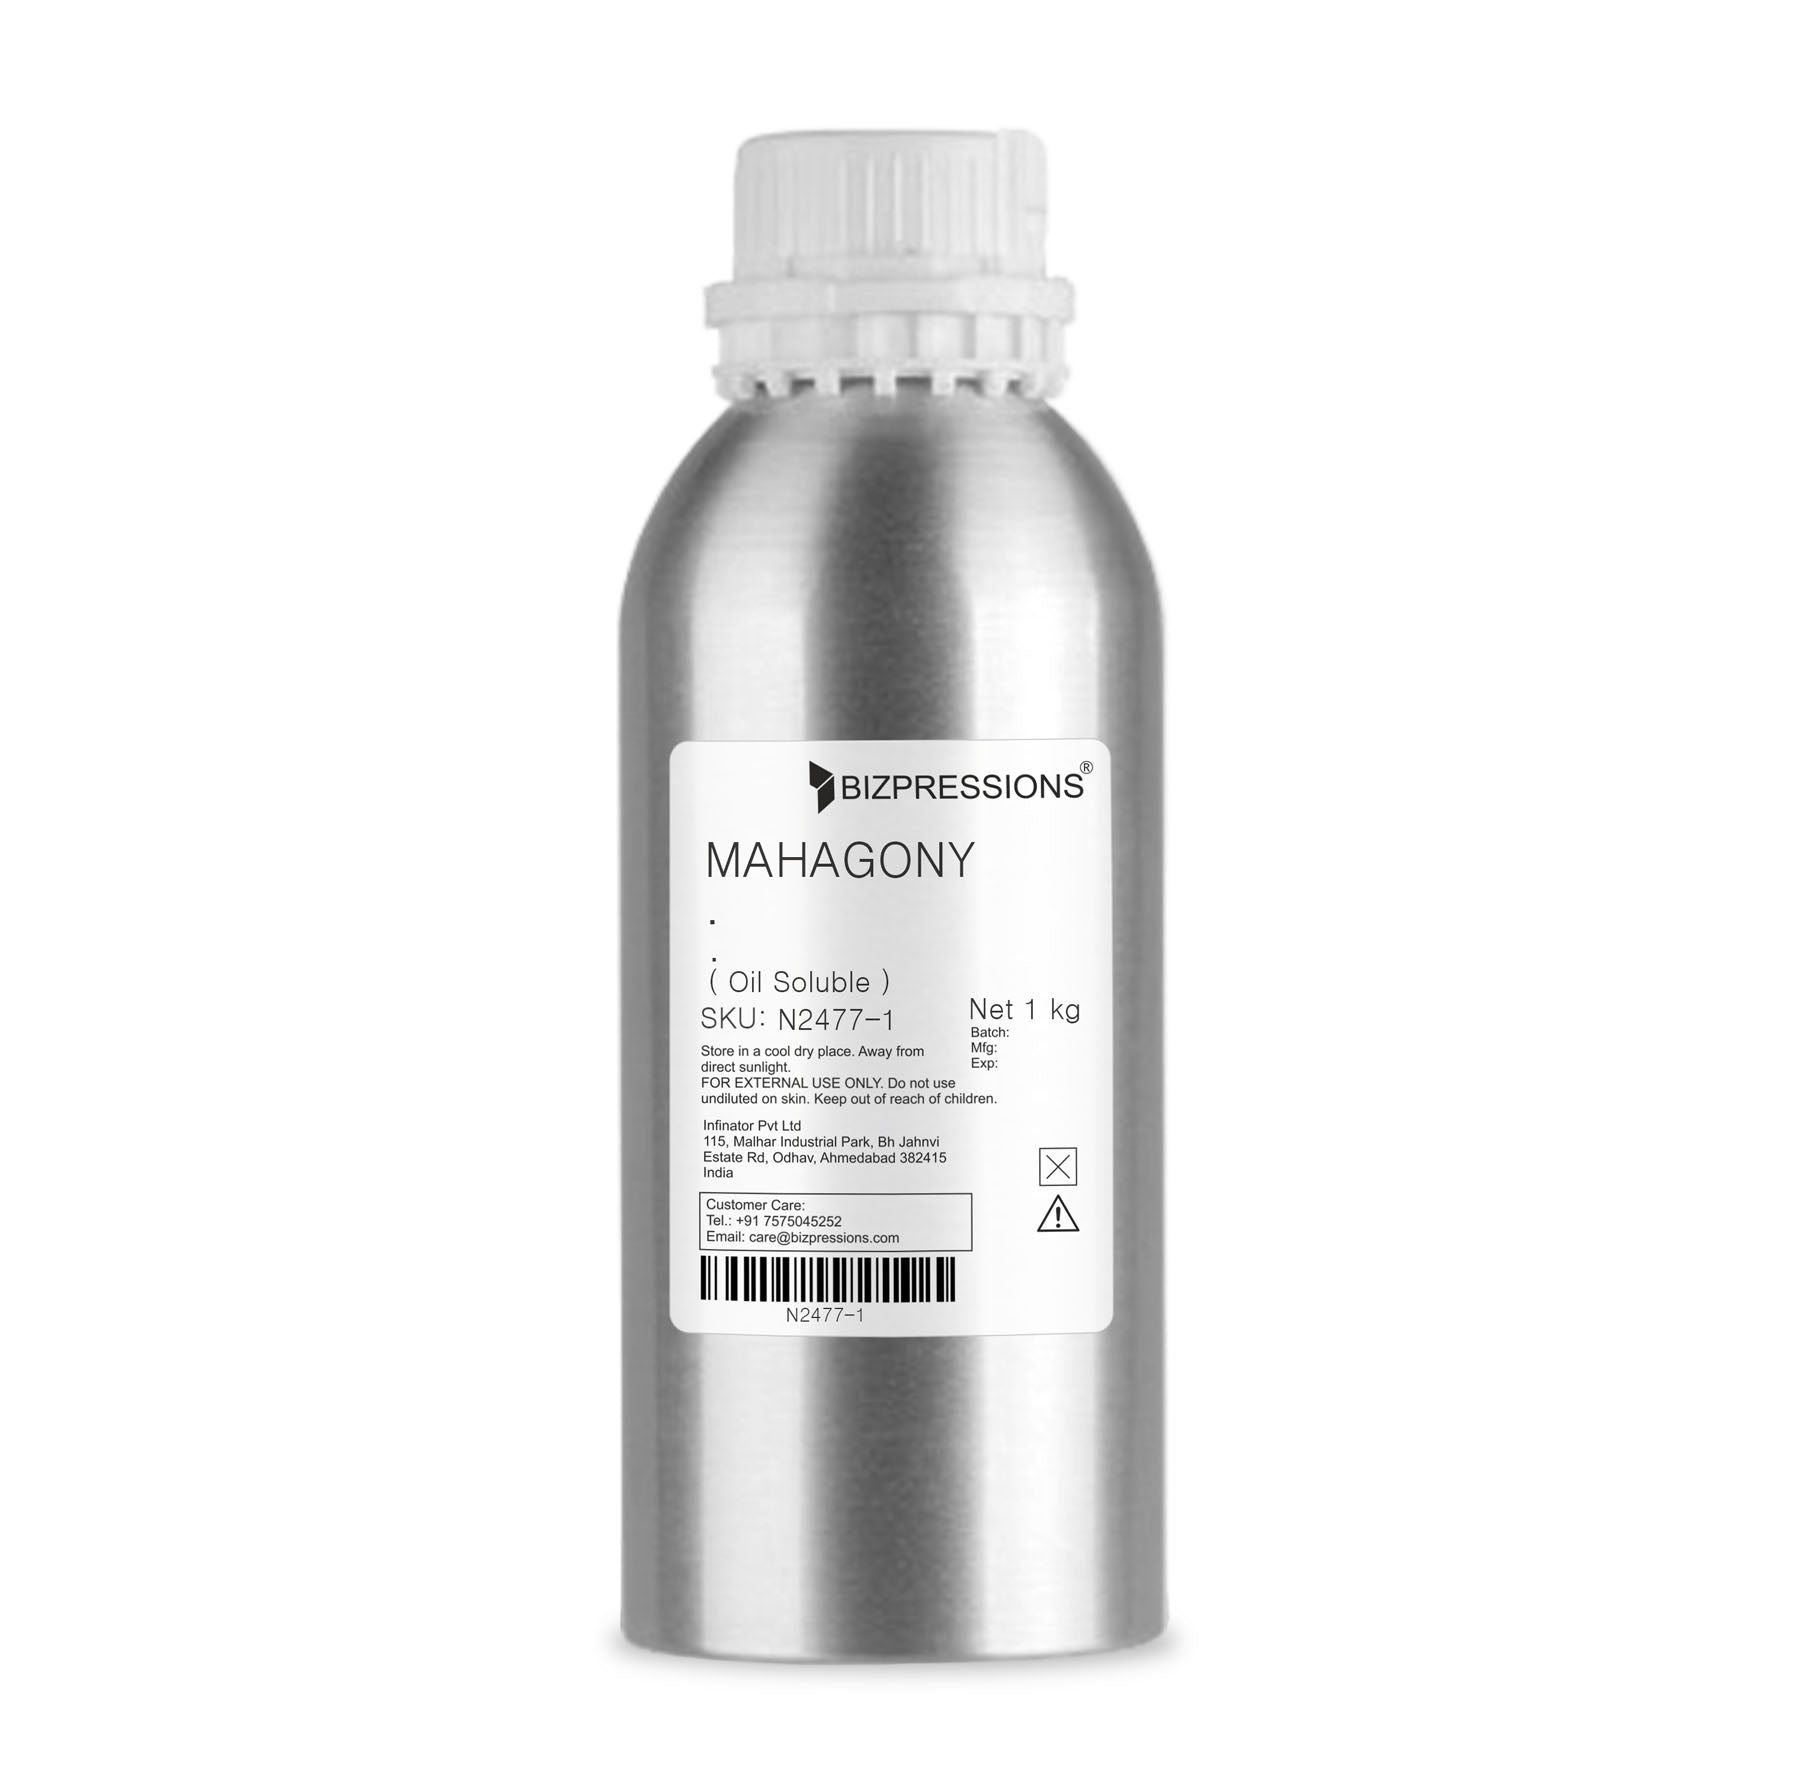 MAHAGONY - Fragrance ( Oil Soluble ) - 1 kg